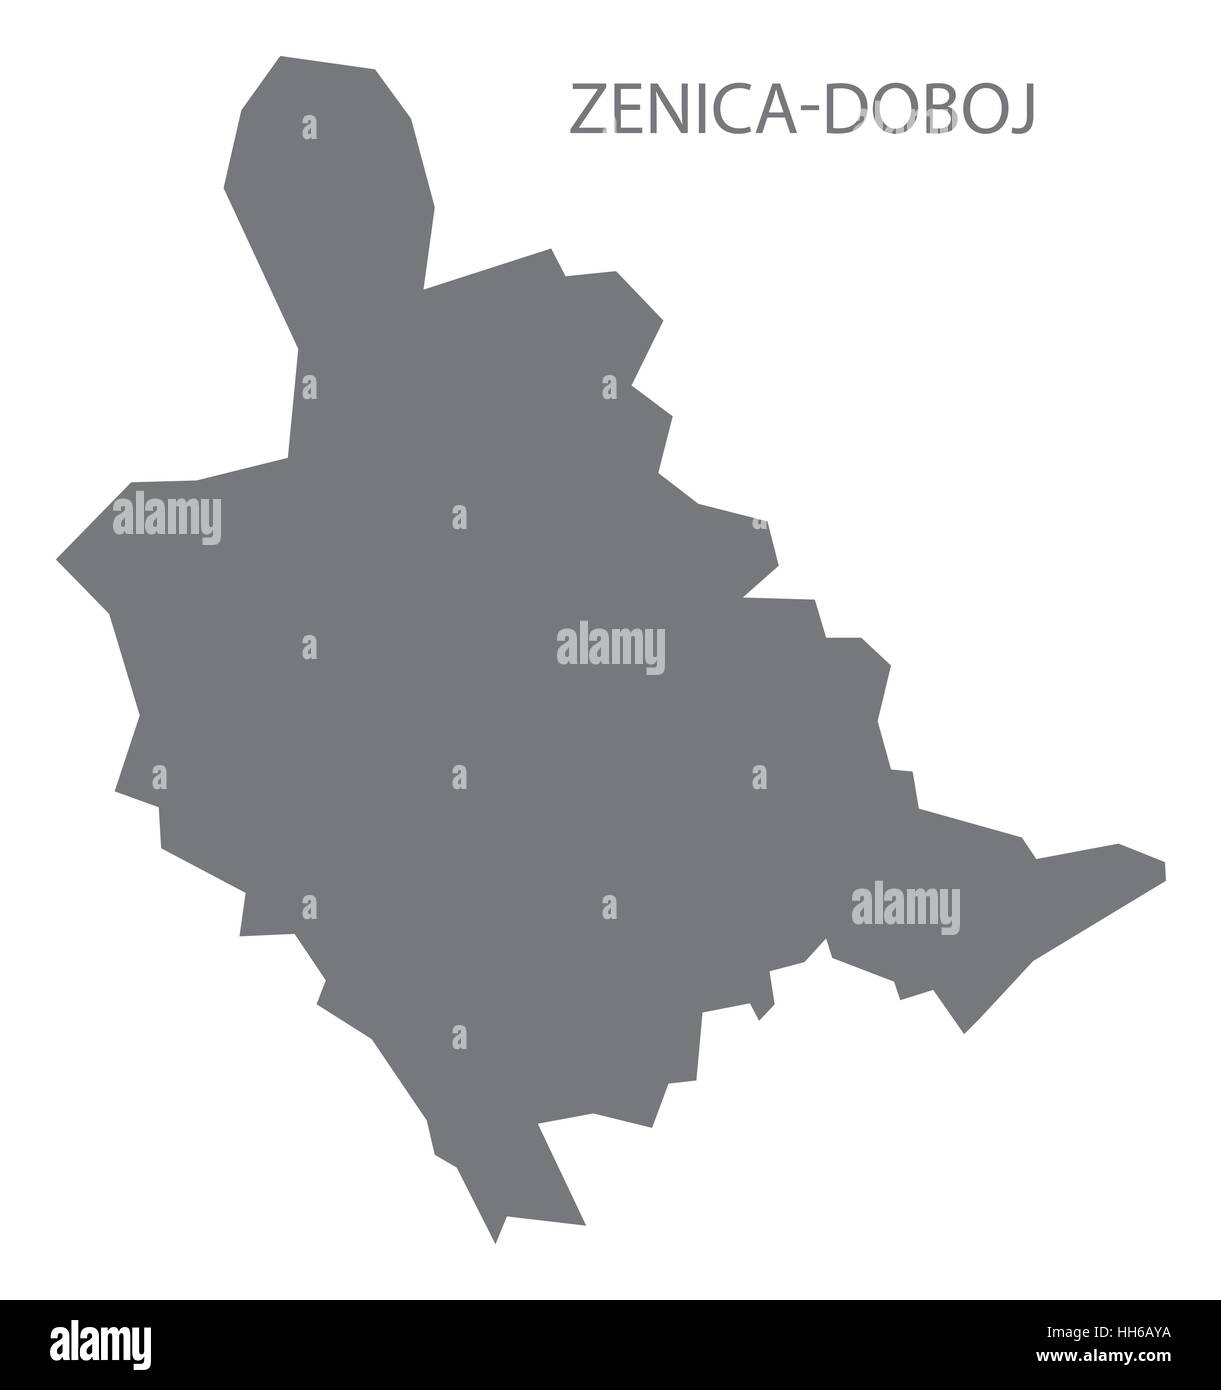 Zenica-Doboj Bosnia and Herzegovina Map in grey Stock Vector